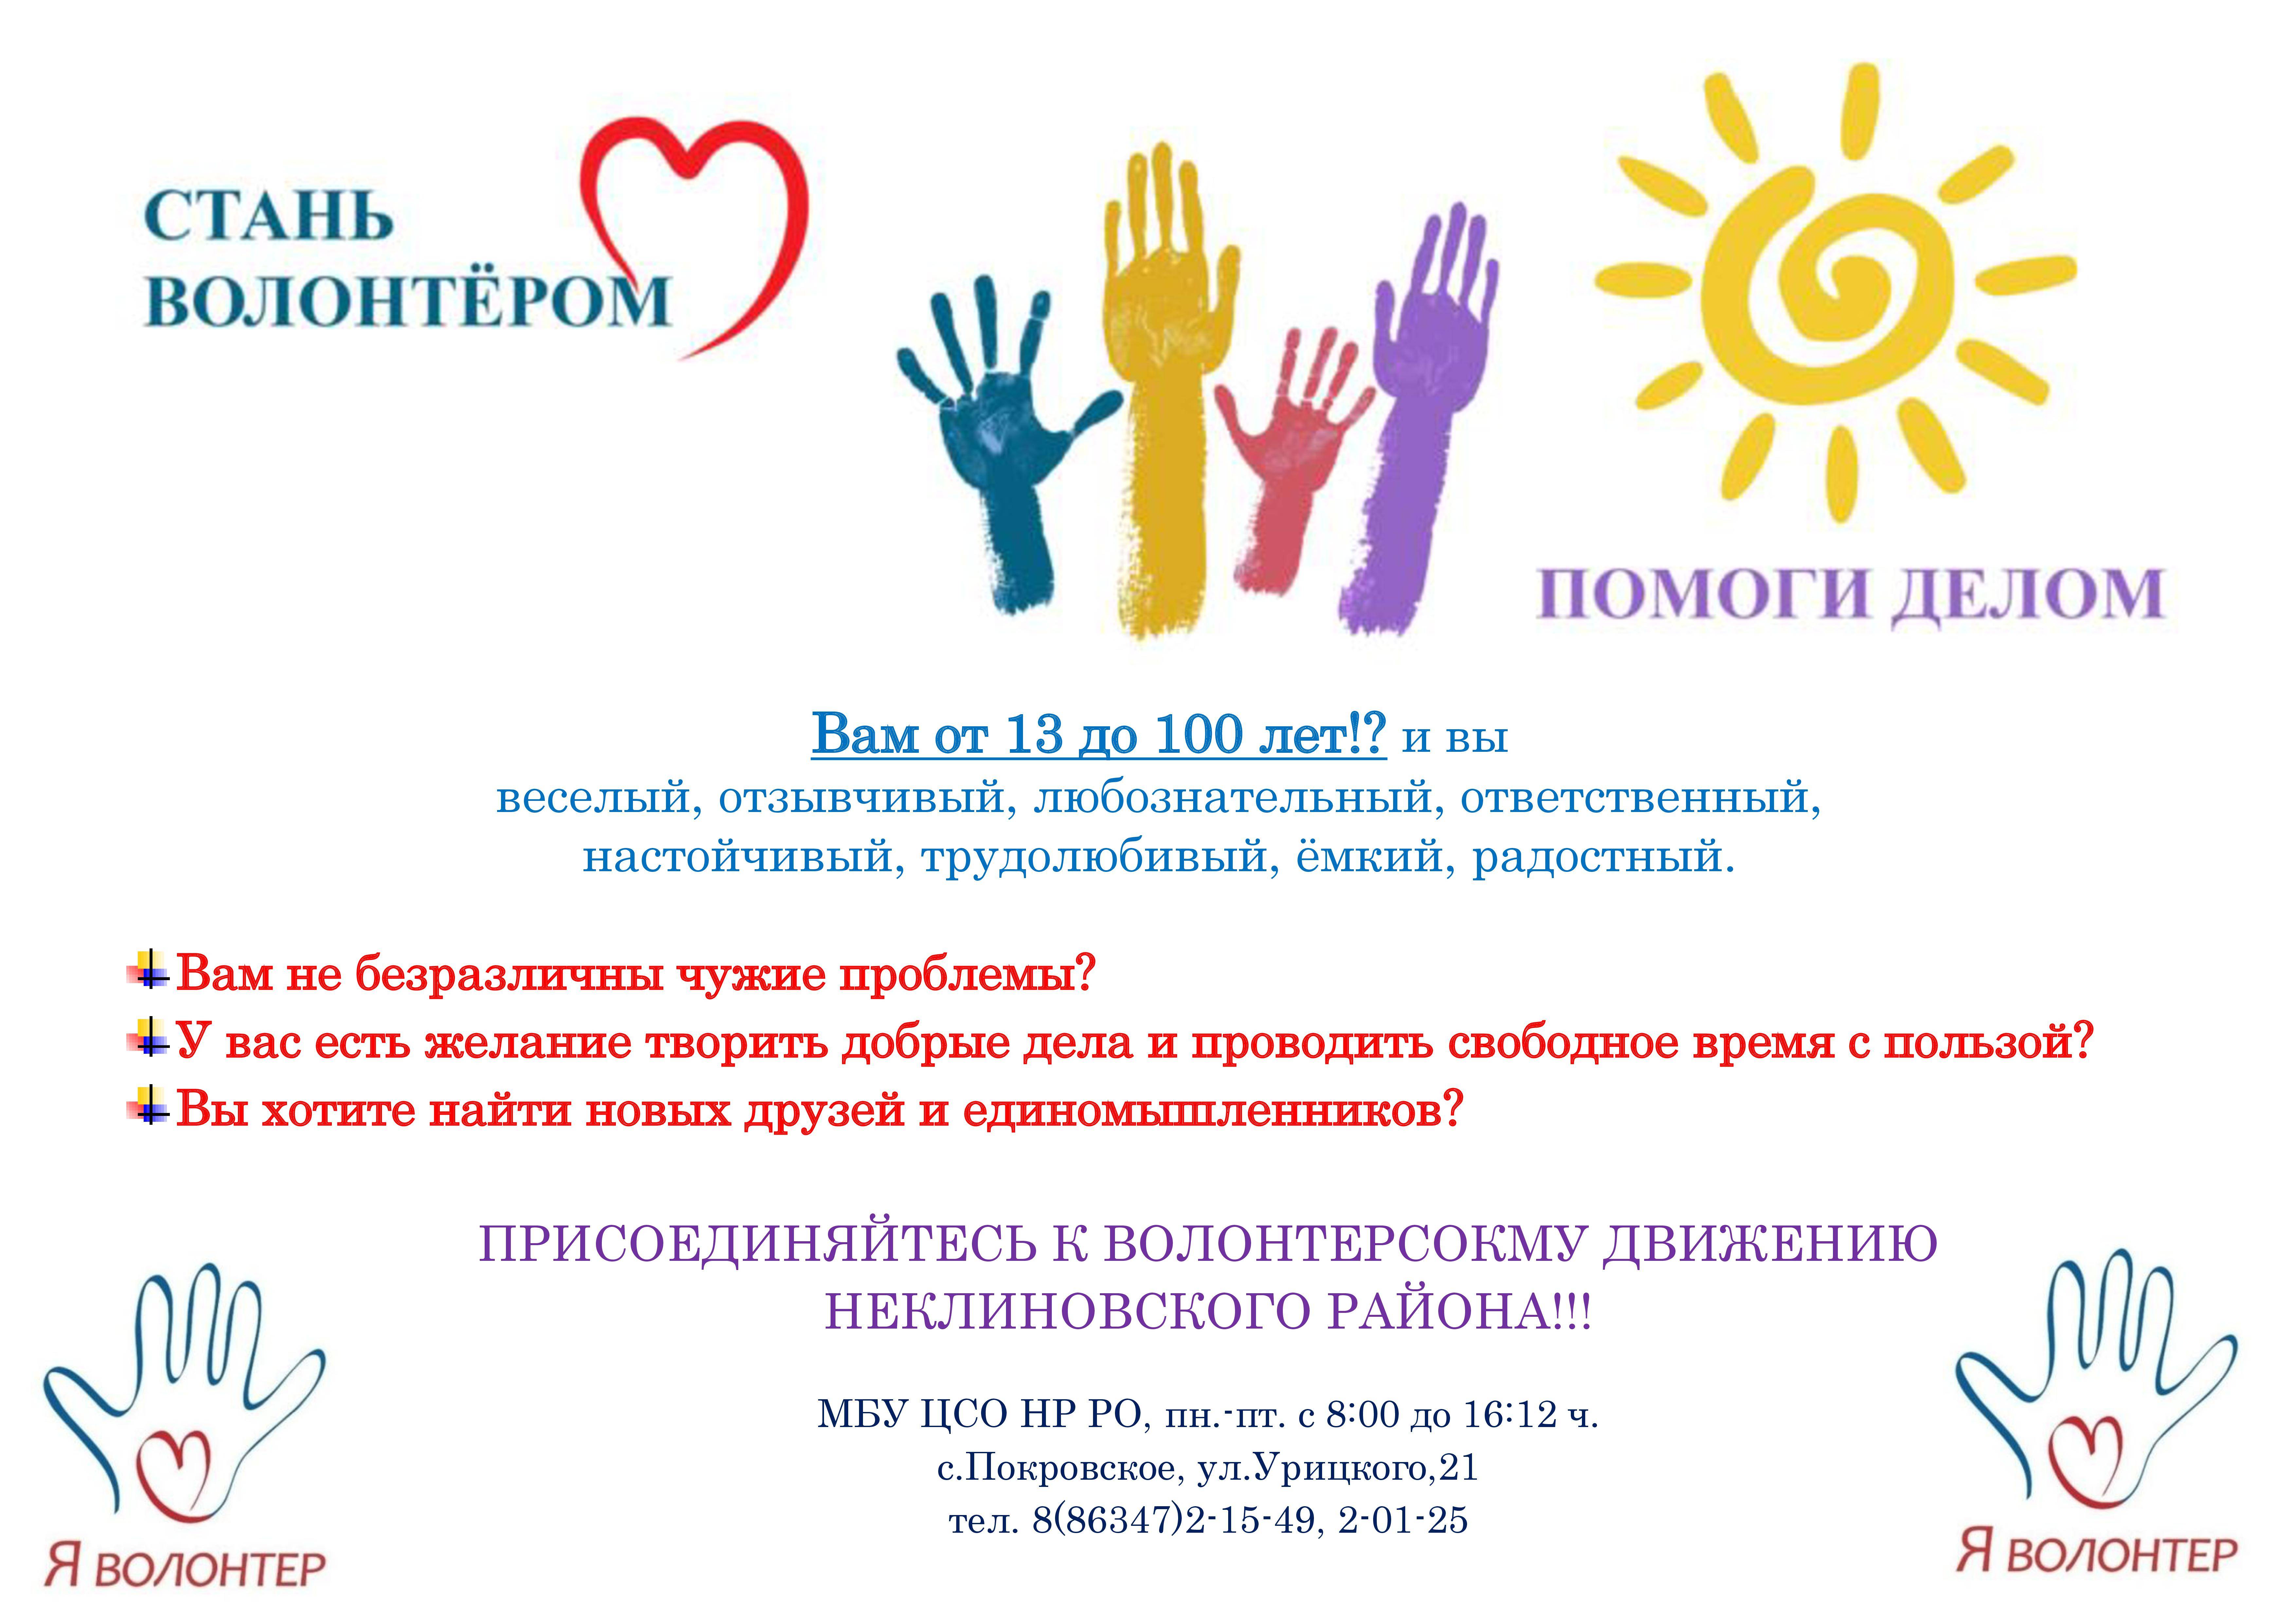 Кто такой волонтер и есть ли волонтерство в россии?